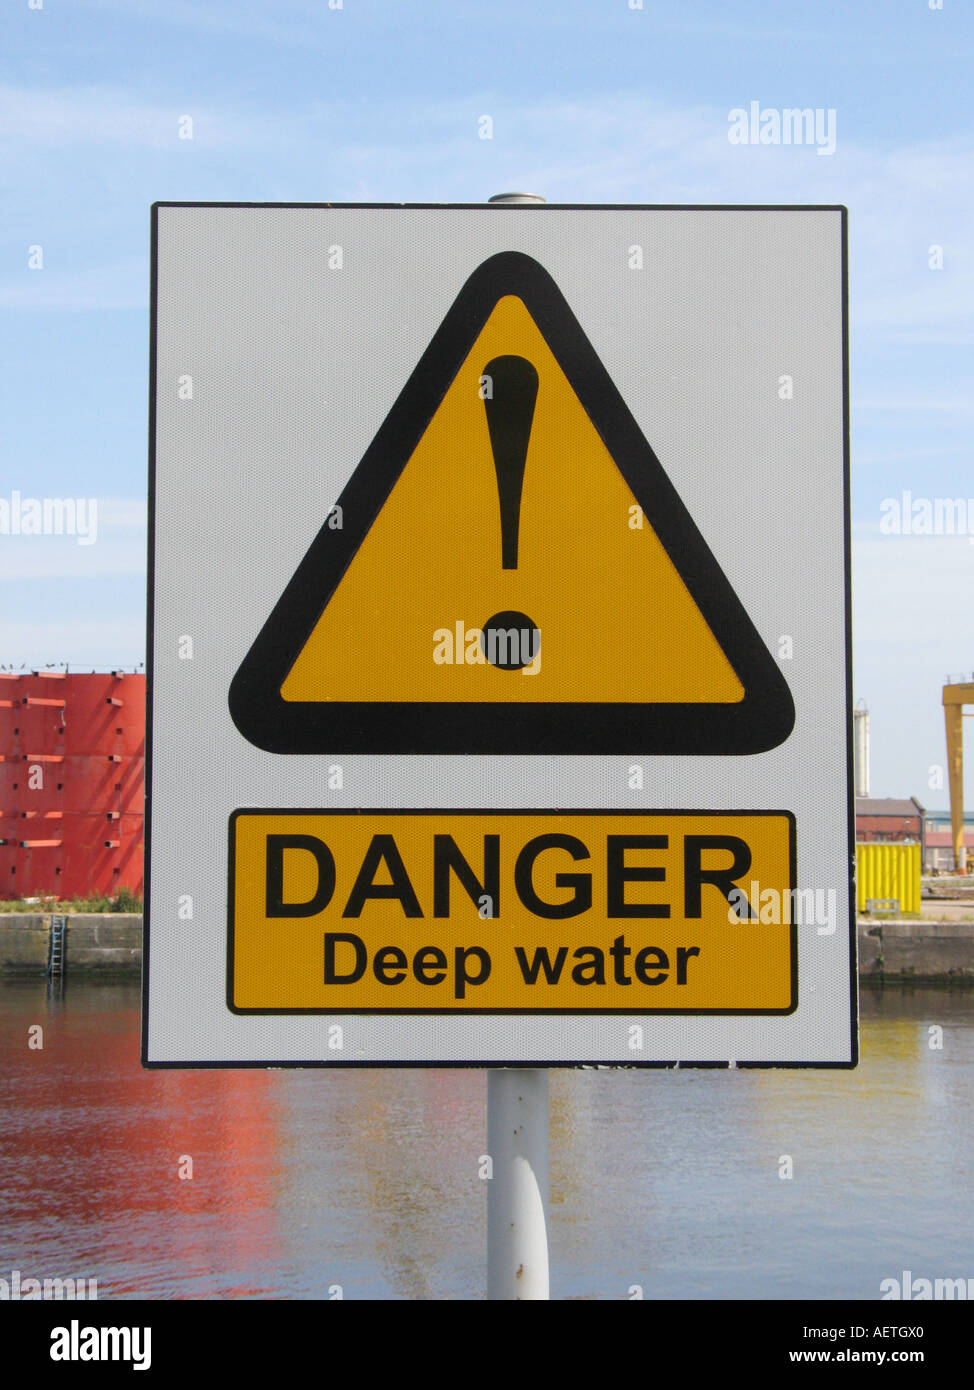 A 'Danger Deep Water' sign. Stock Photo